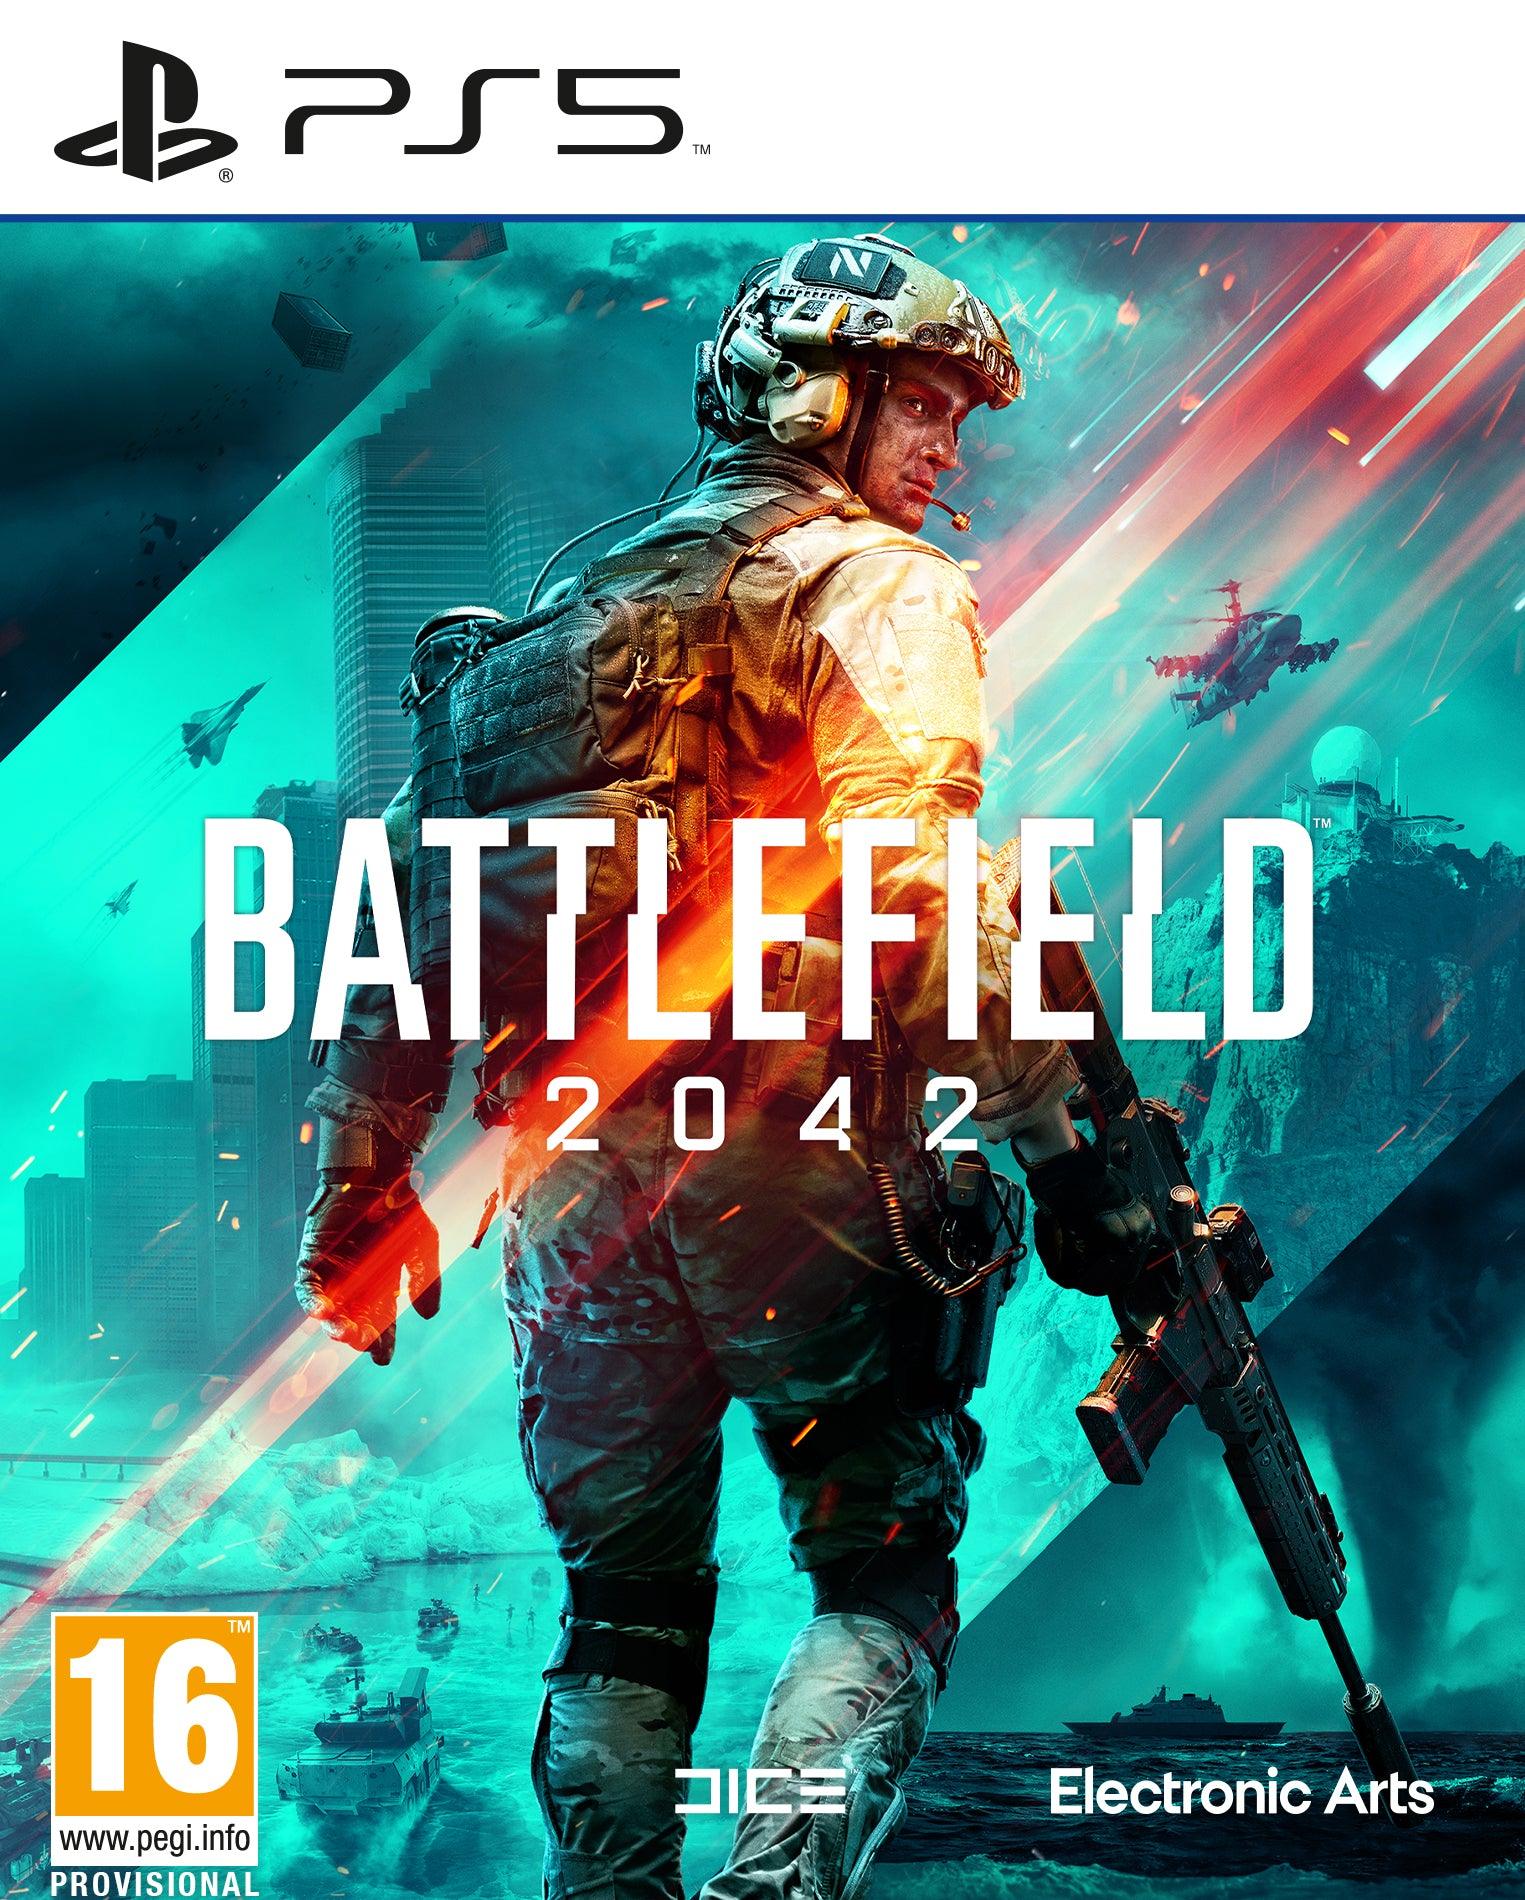 Battlefield 2042 - Want a New Gadget